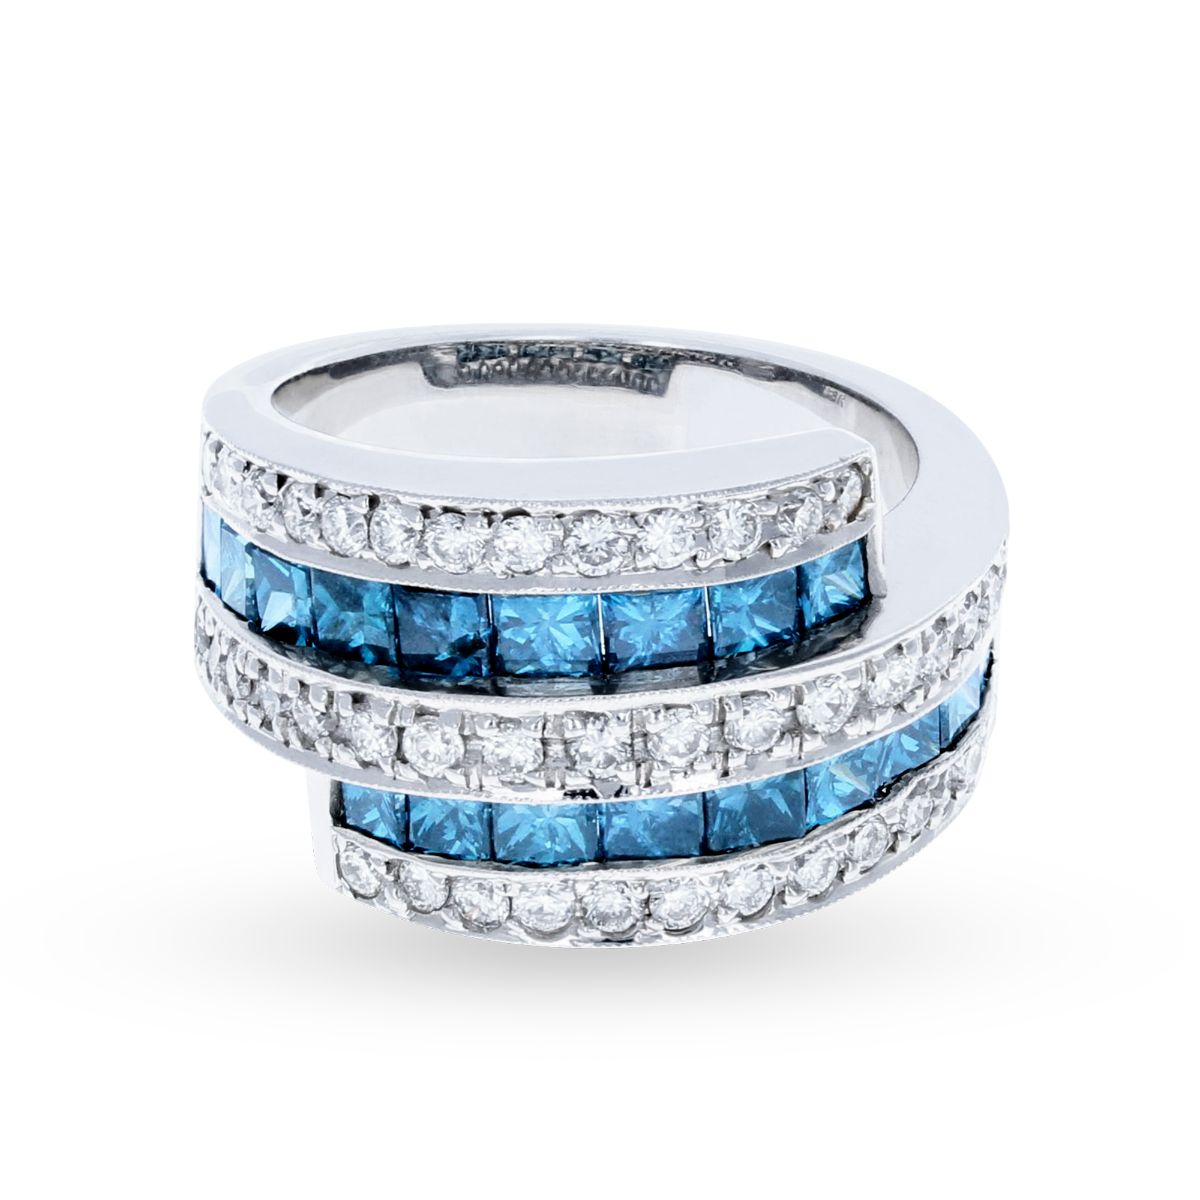 White Gold Blue and White Overlapped Diamond Ring 18KT